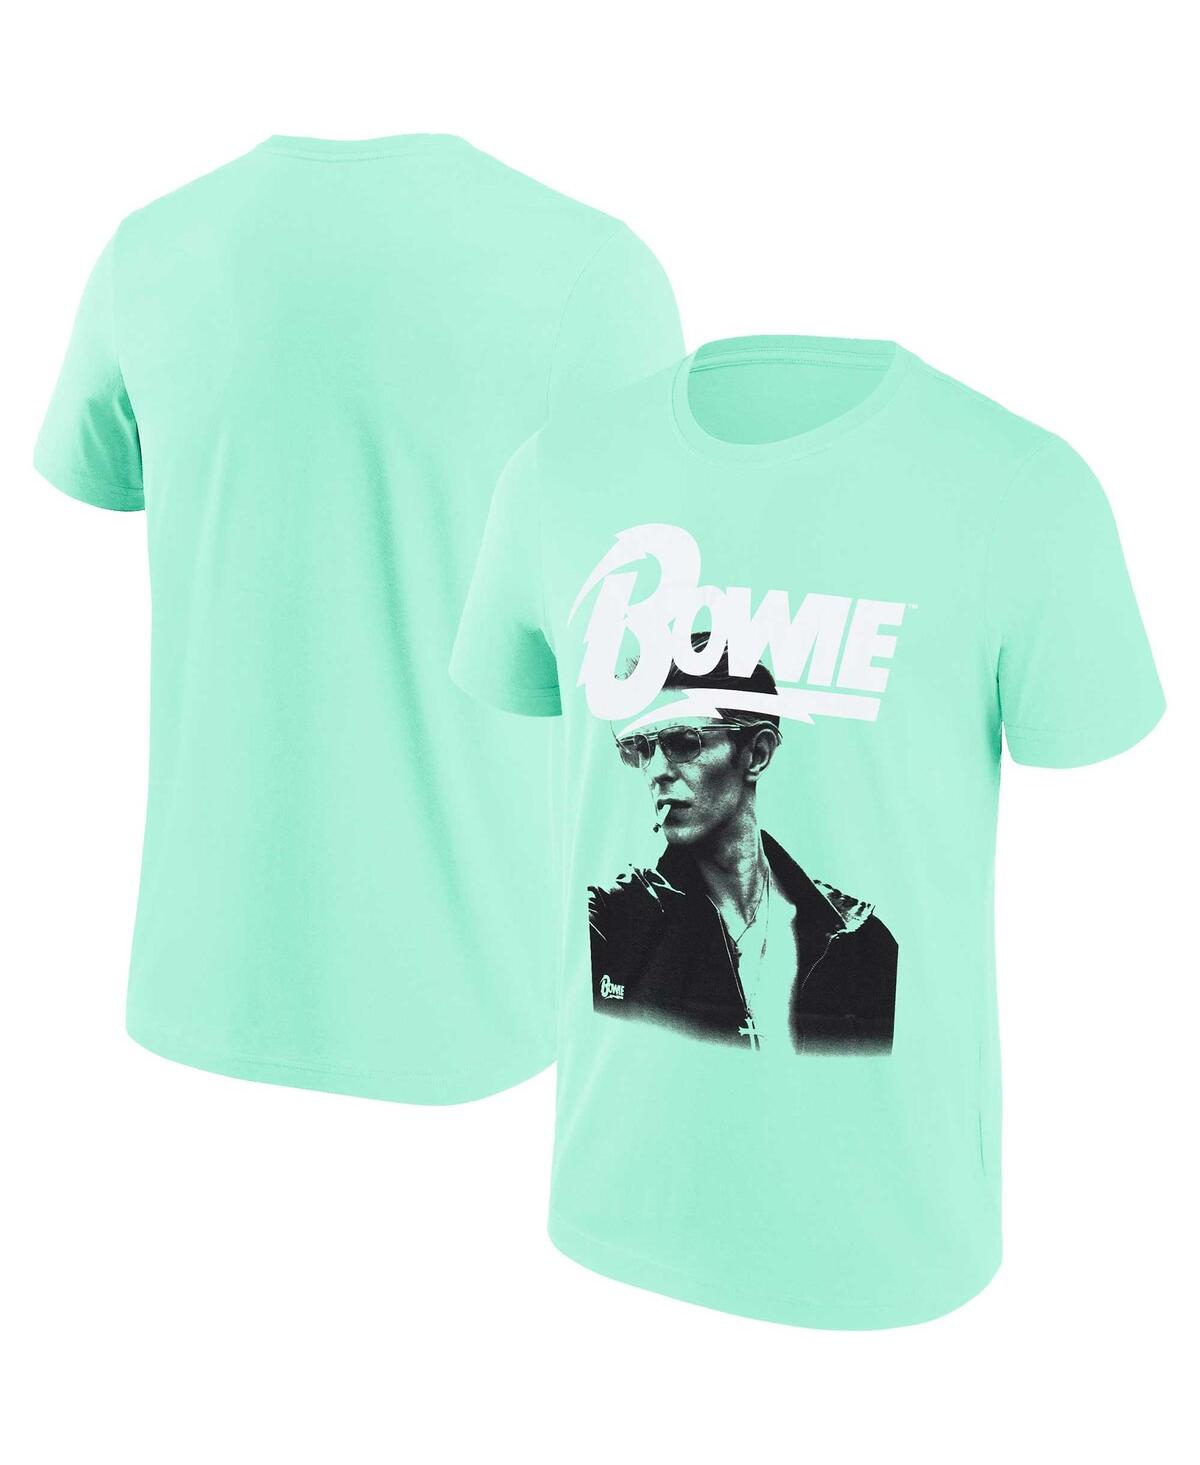 Men's and Women's Mint David Bowie Graphic T-shirt - Mint